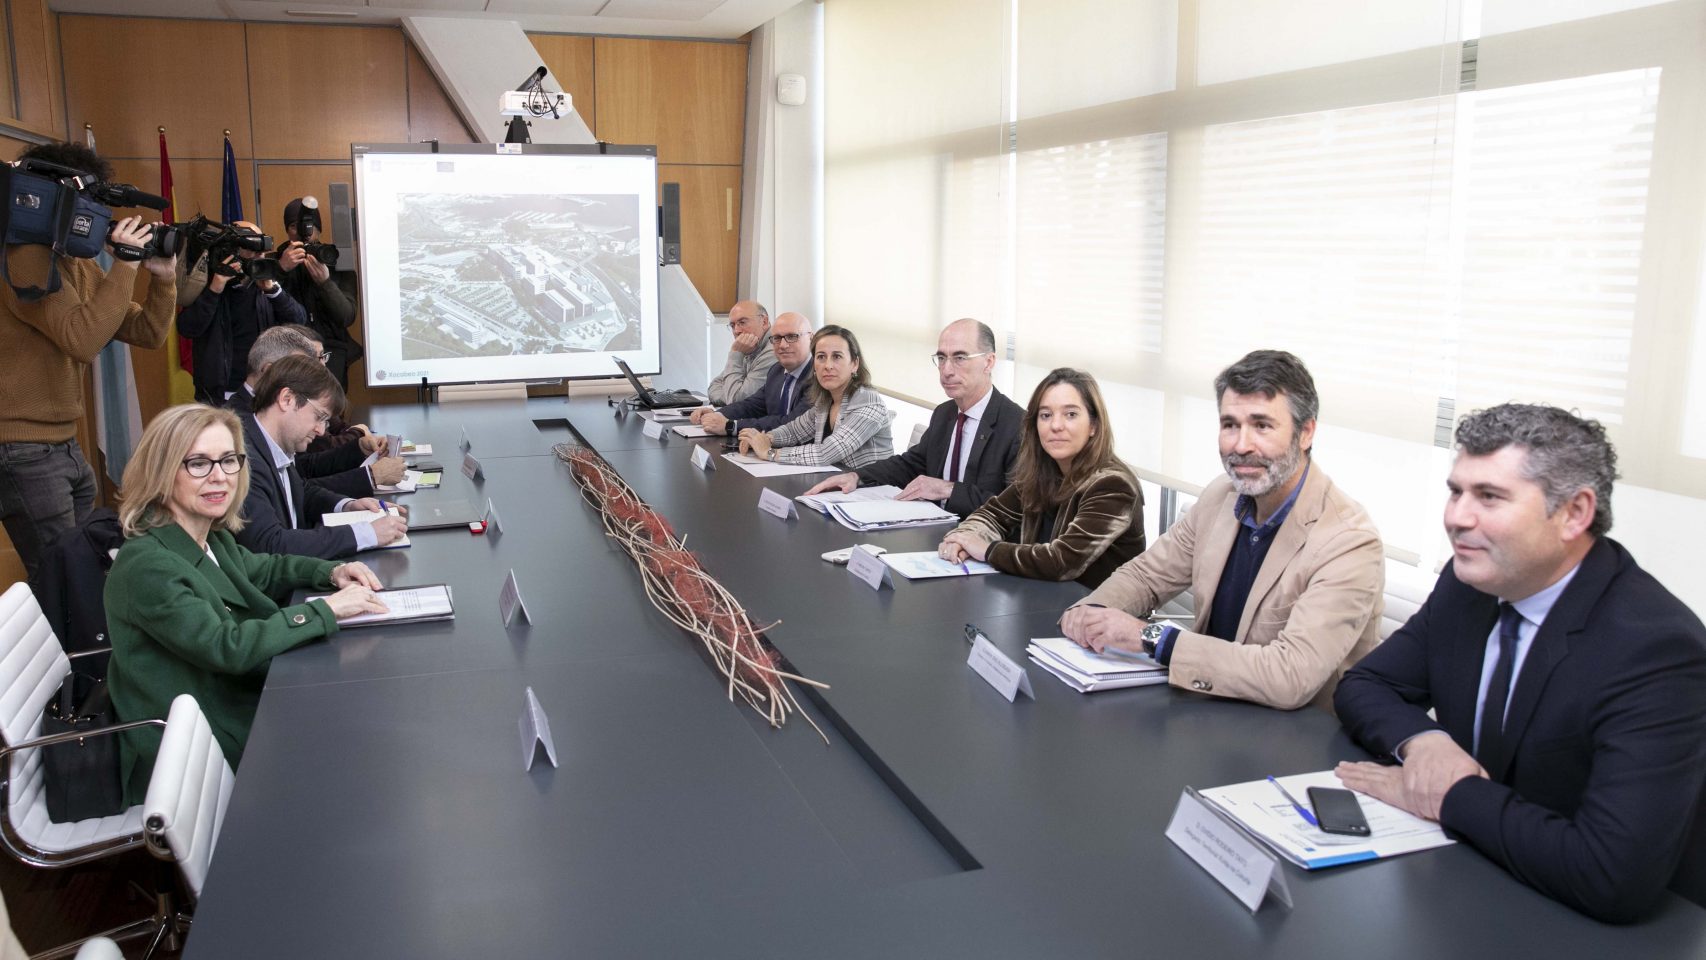 El conselleiro de Sanidade, Jesús Vázquez Almuiña, y la alcaldesa, Inés Rey, se reúnen para abordar el proyecto del hospital de A Coruña